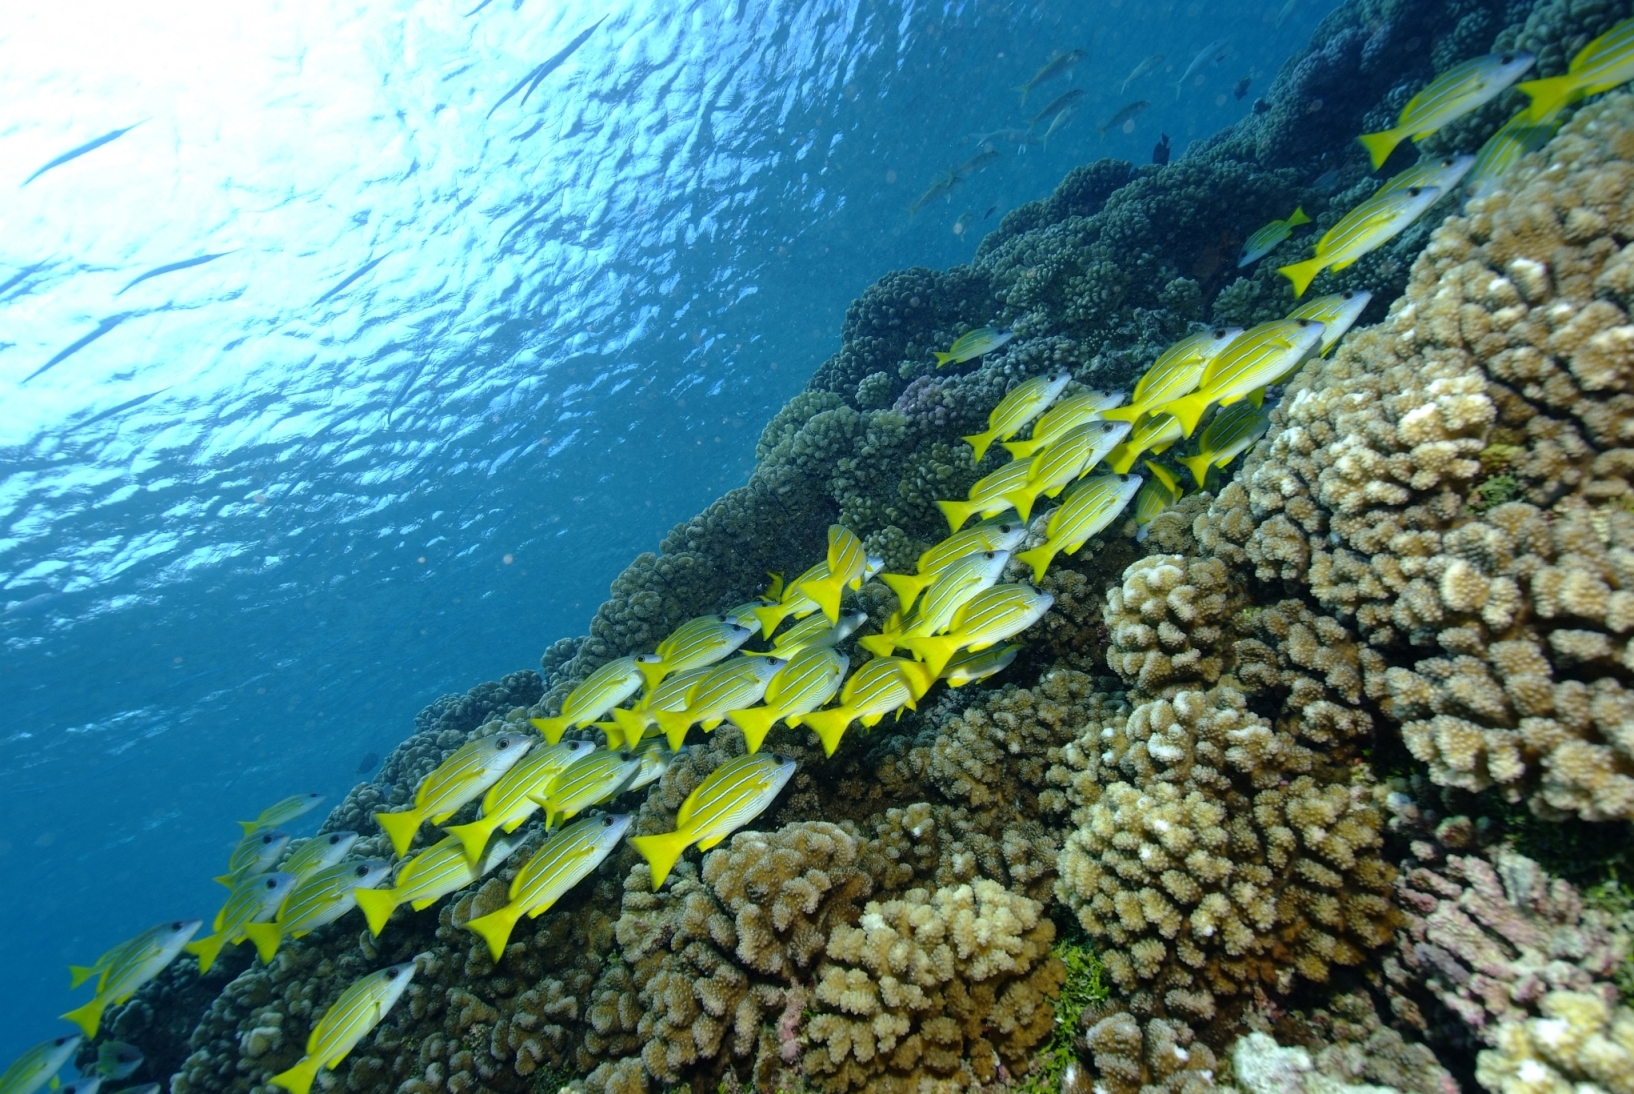 Die facettenreiche Unterwasserwelt von Thaiti und Französisch Polynesien.